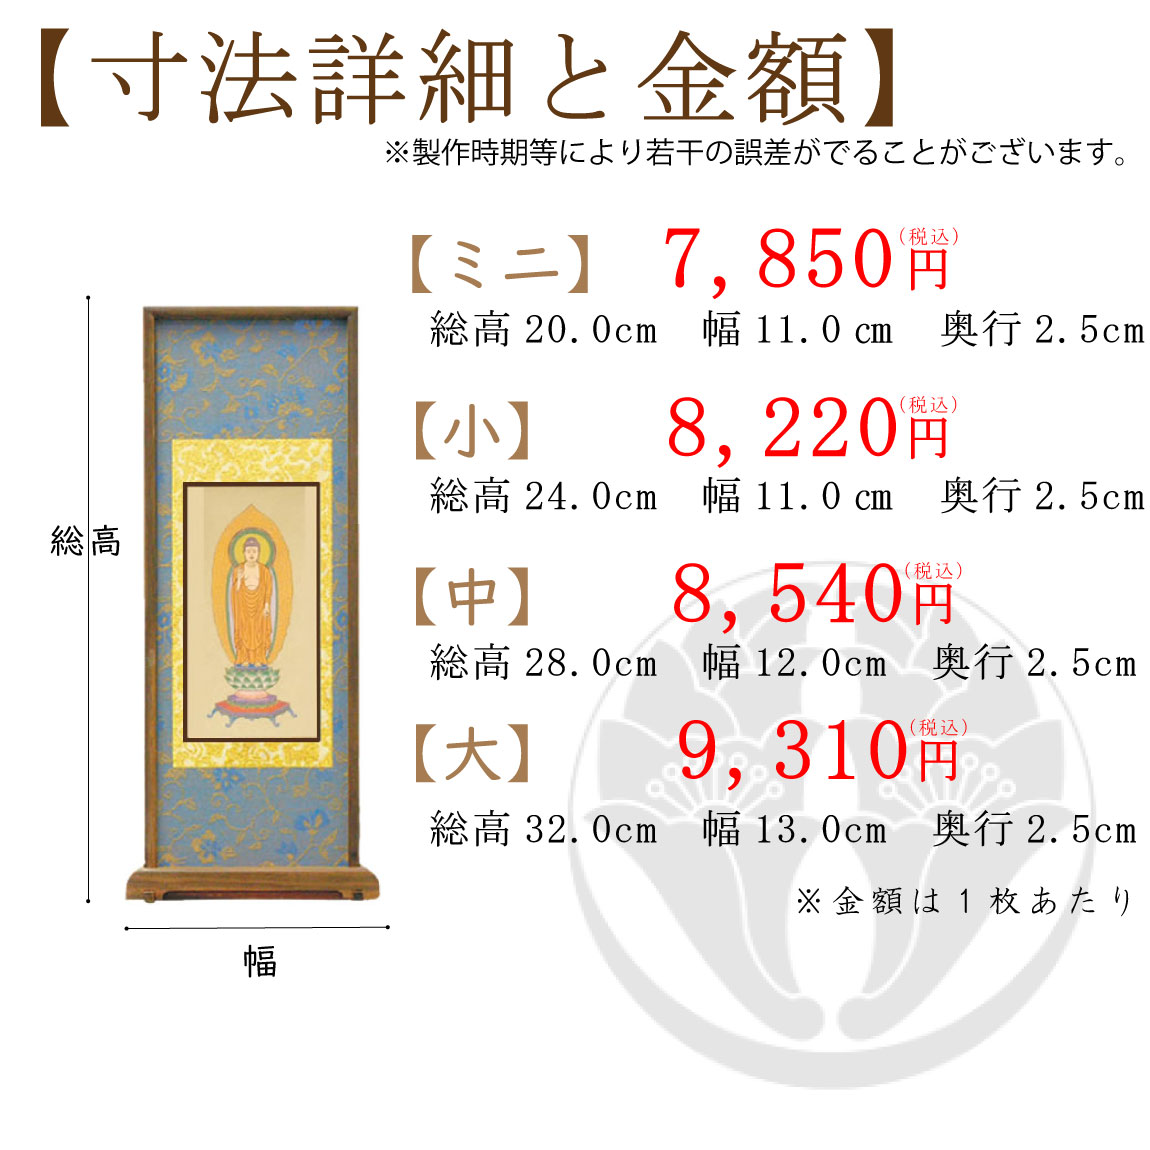 【高級素材】浄土宗のスタンド式掛け軸のサイズと価格